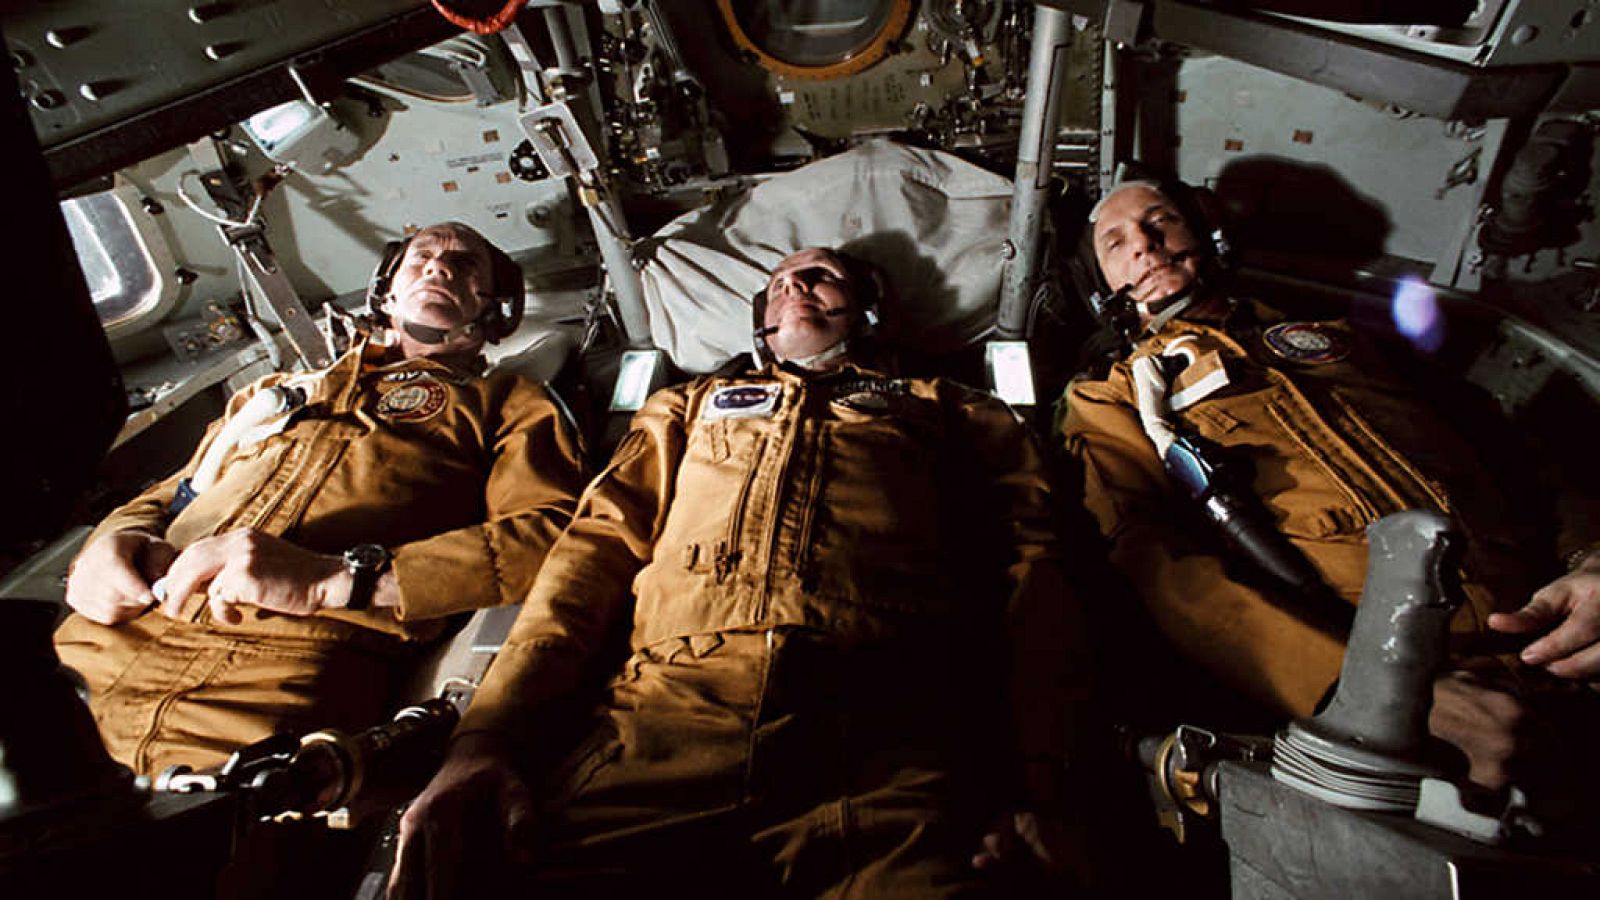 La noche temática - Apolo-Soyuz, cita en el espacio